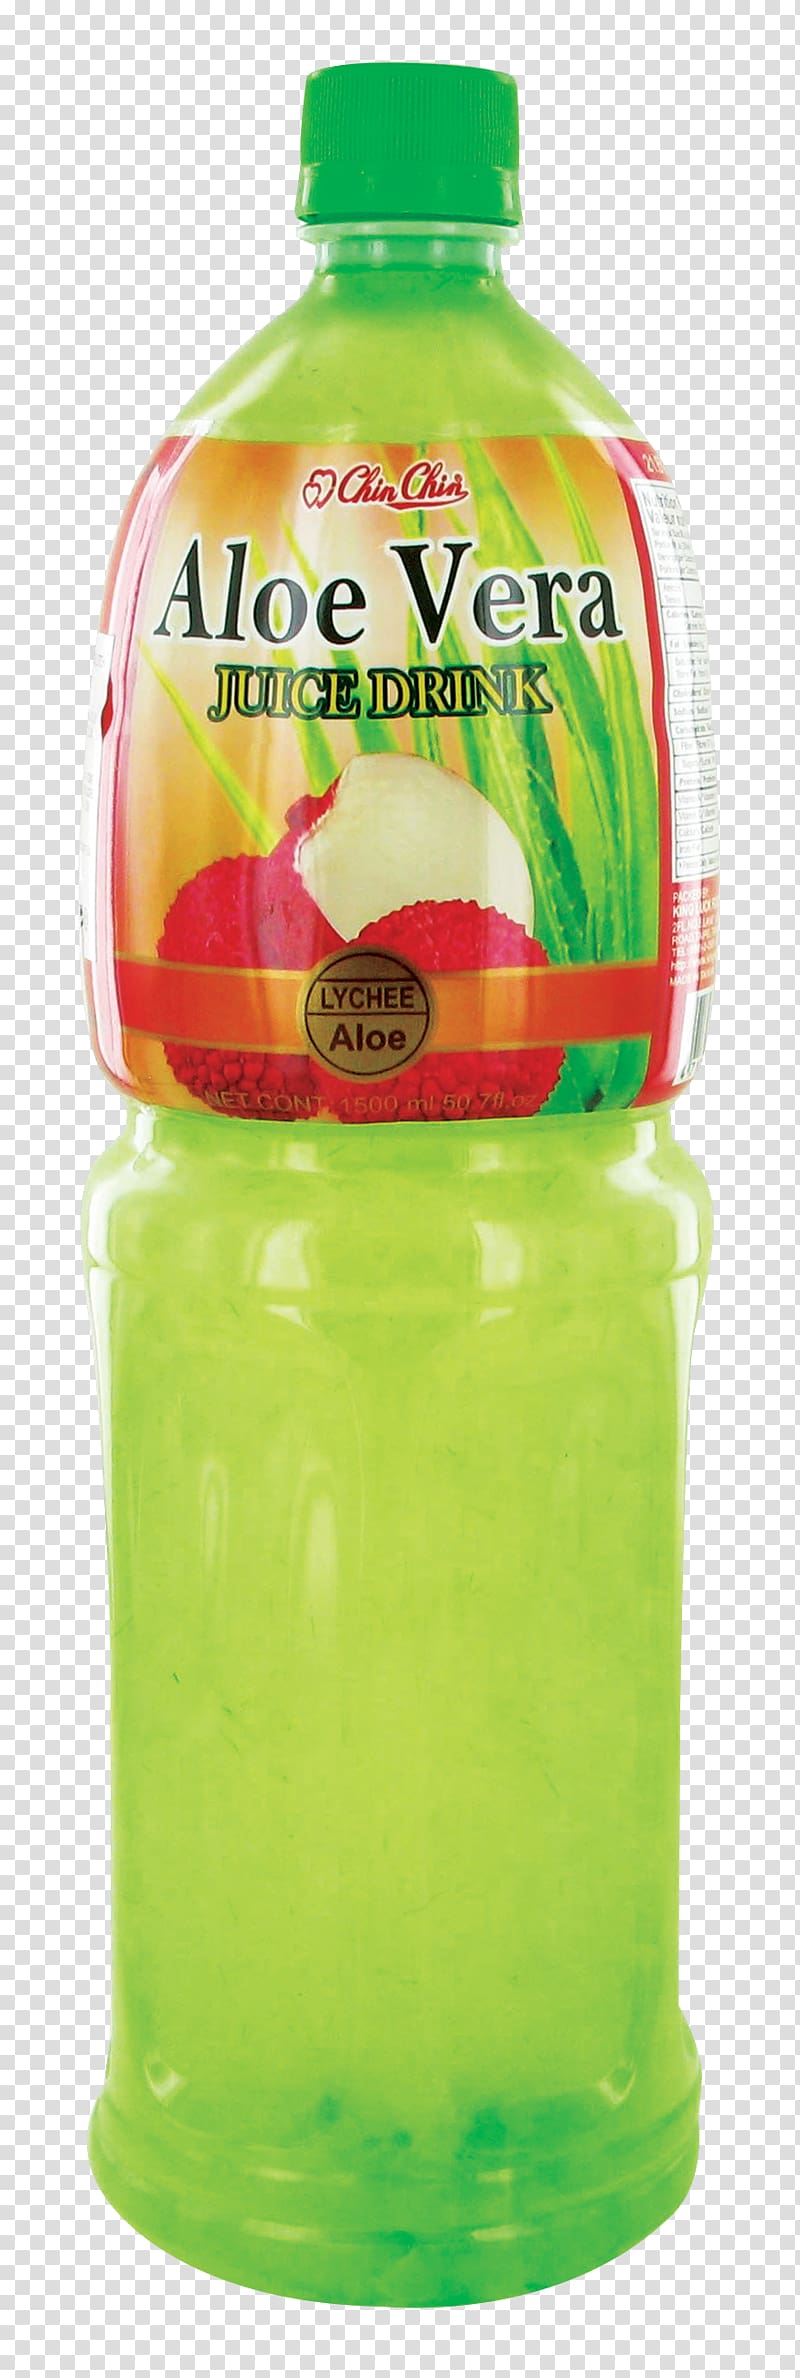 Orange drink Juice Grass jelly Lemon-lime drink Bubble tea, juice transparent background PNG clipart